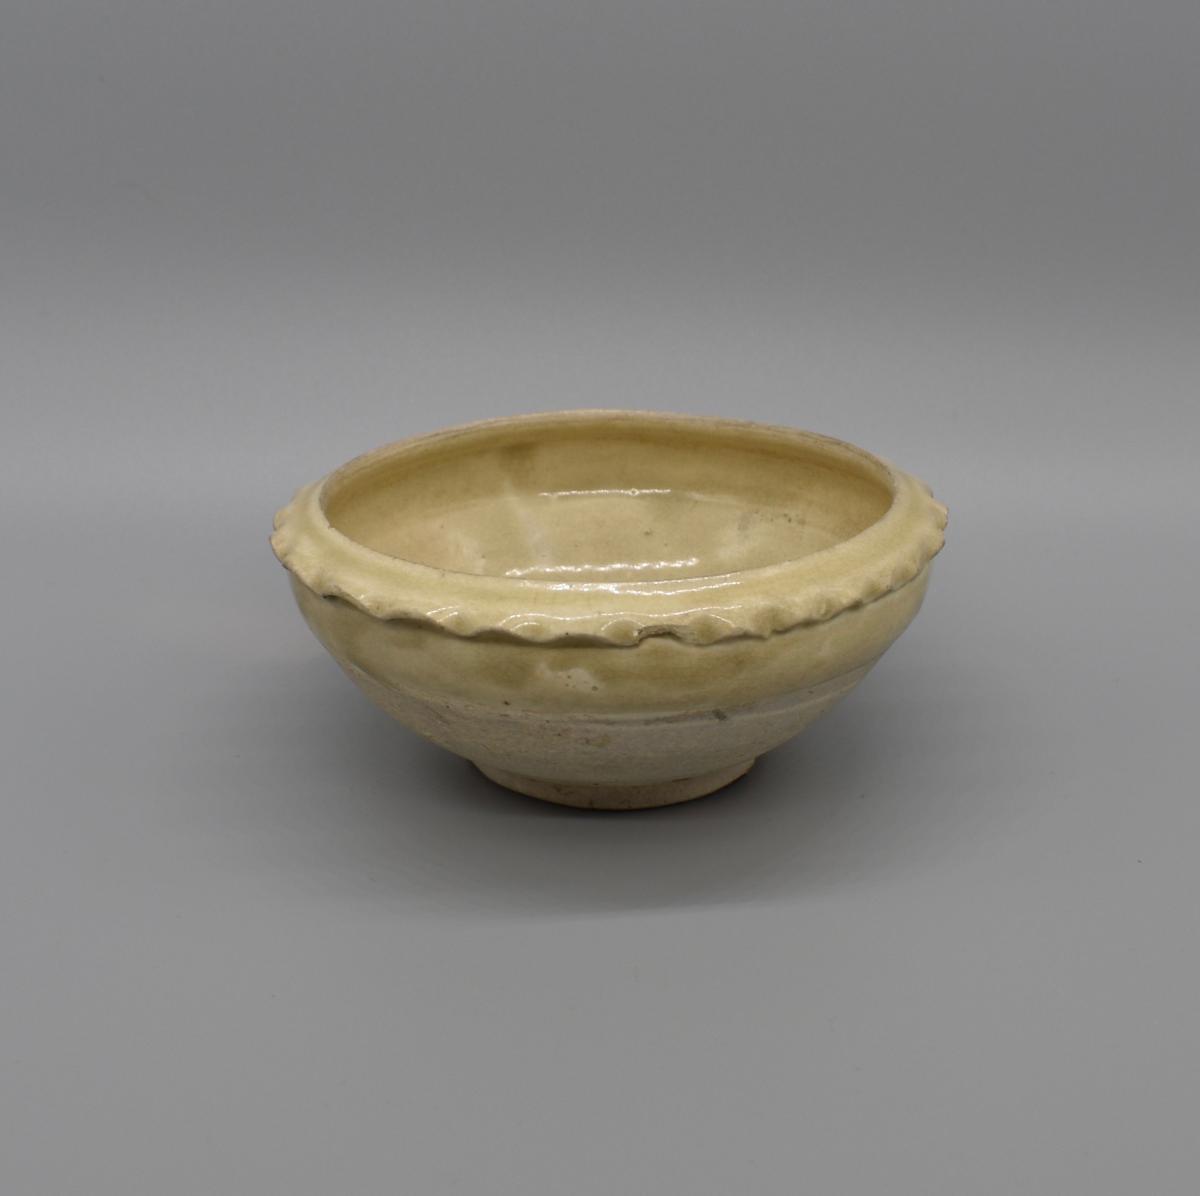 Pie Crust rim bowl, Song Dynasty